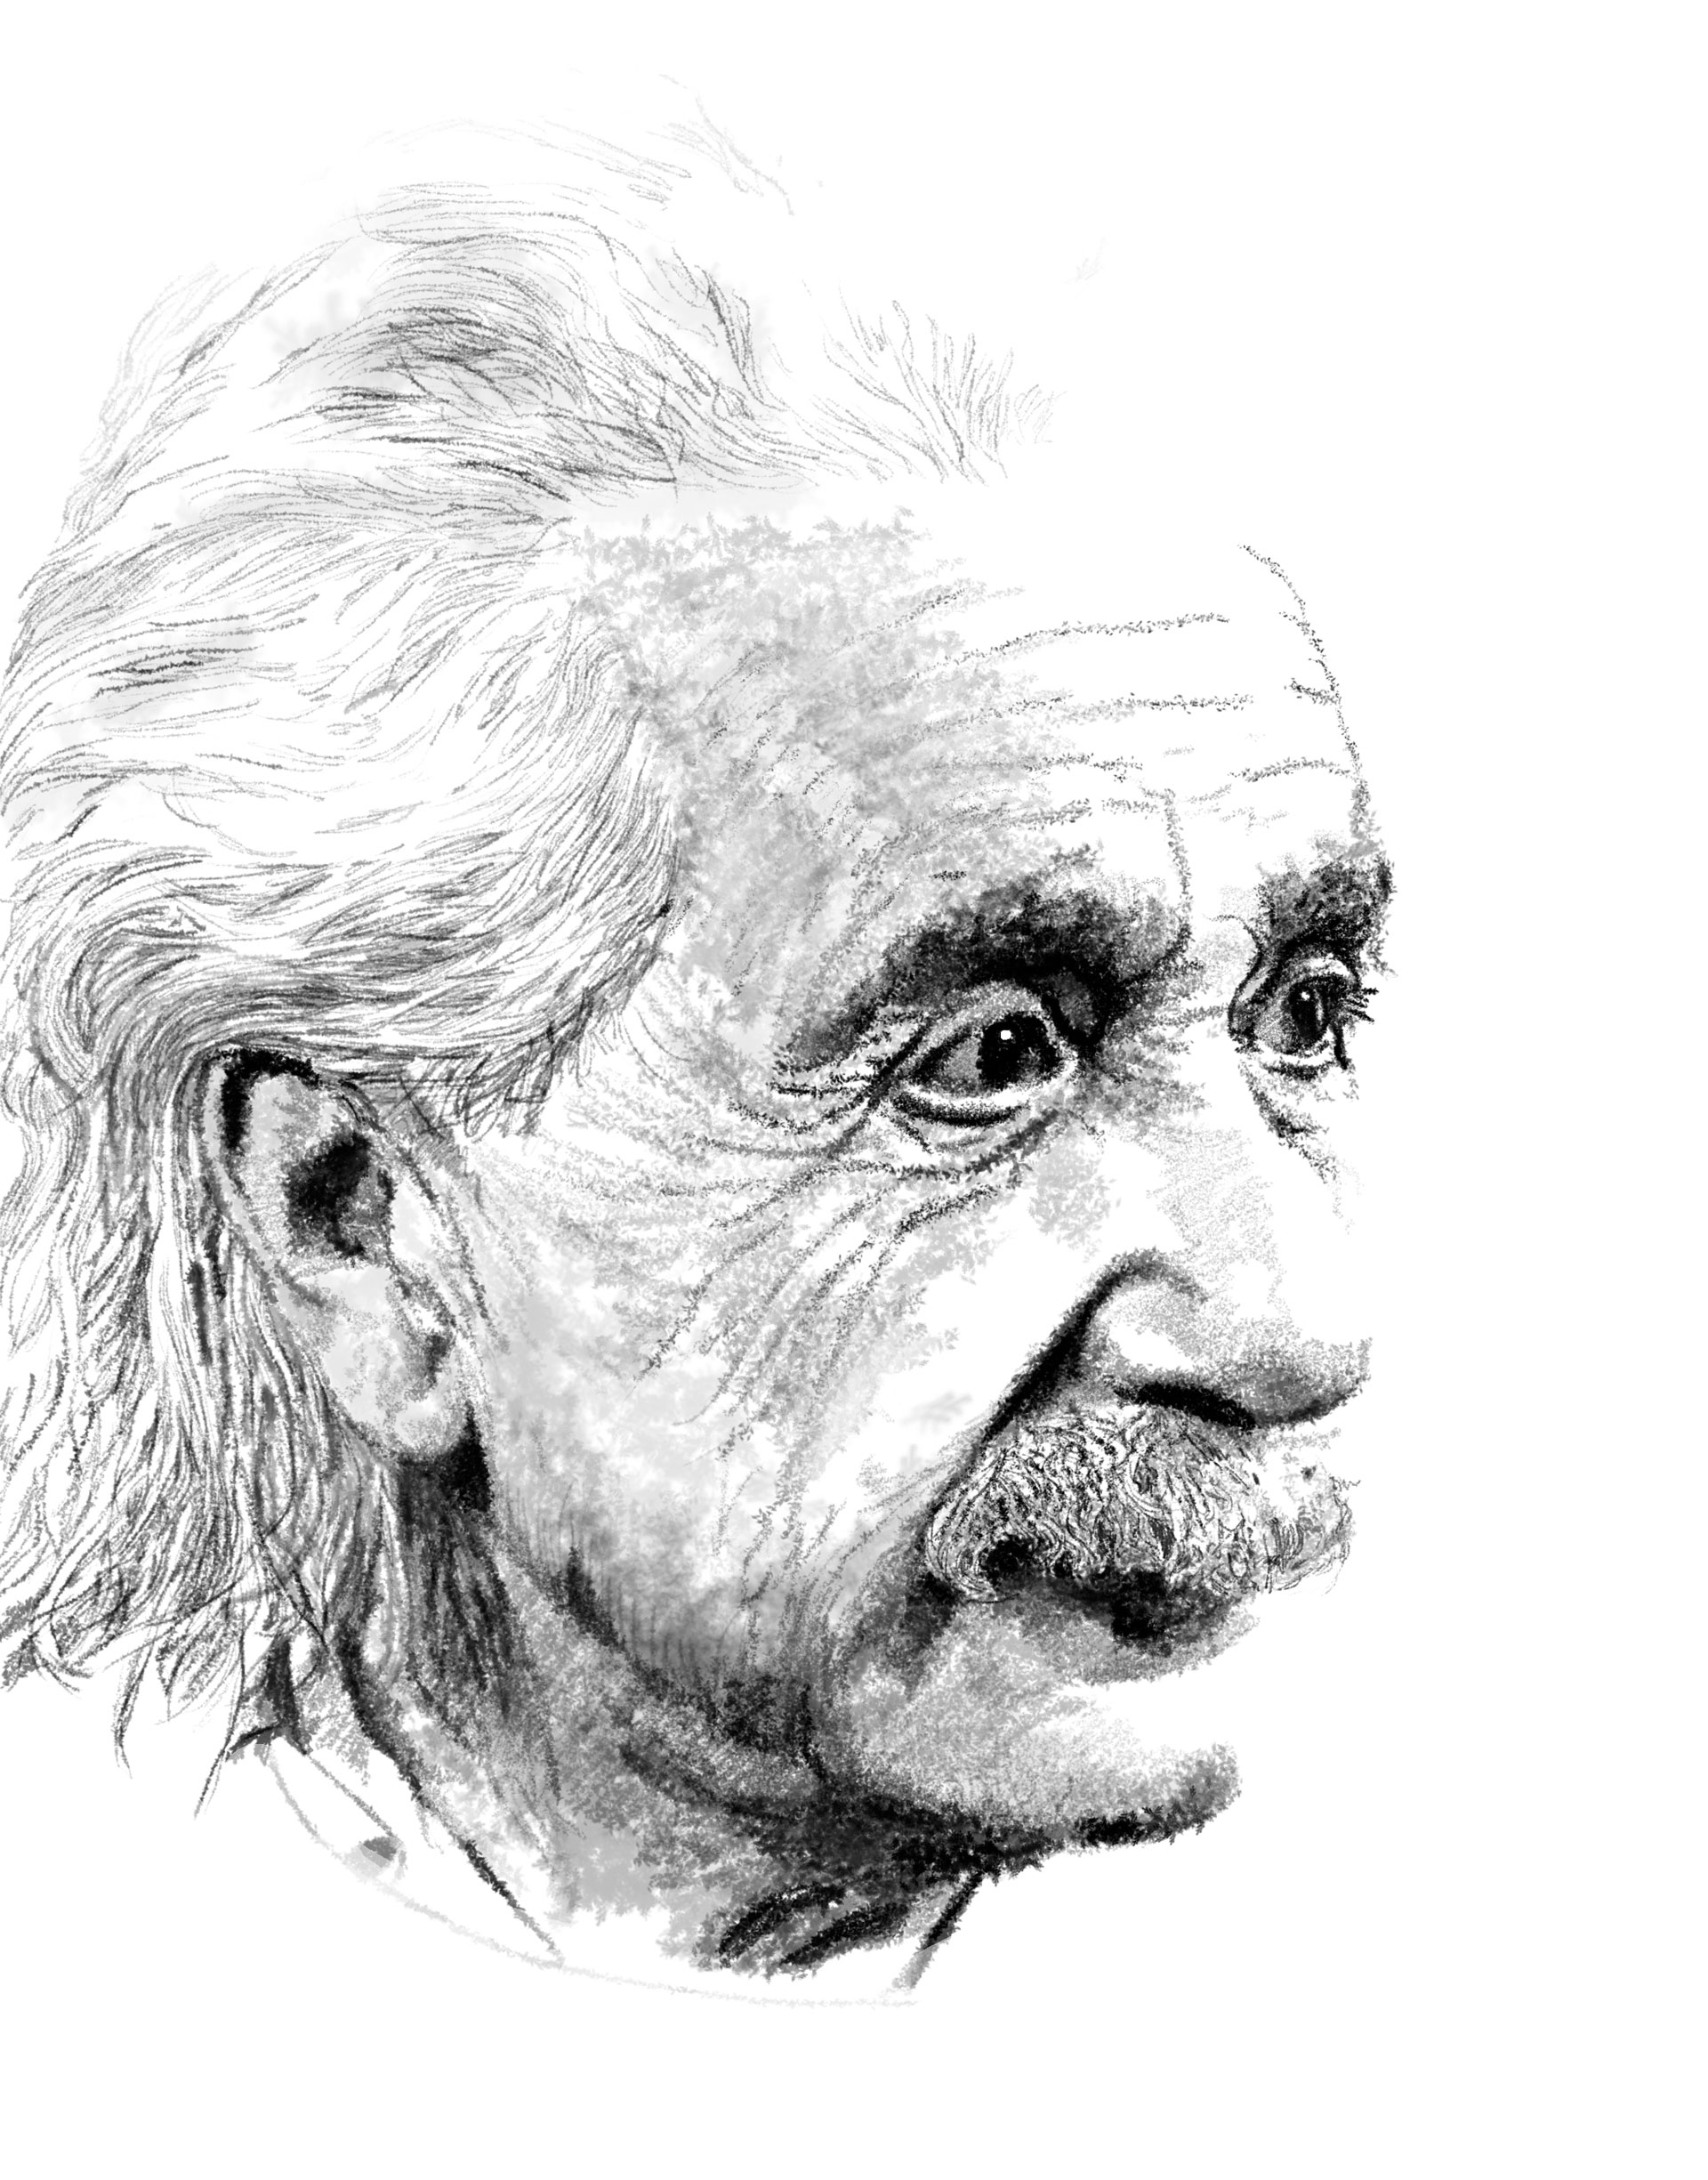 Studio Prépresse pour illustration d'Albert Einstein réalisée sous photoshop